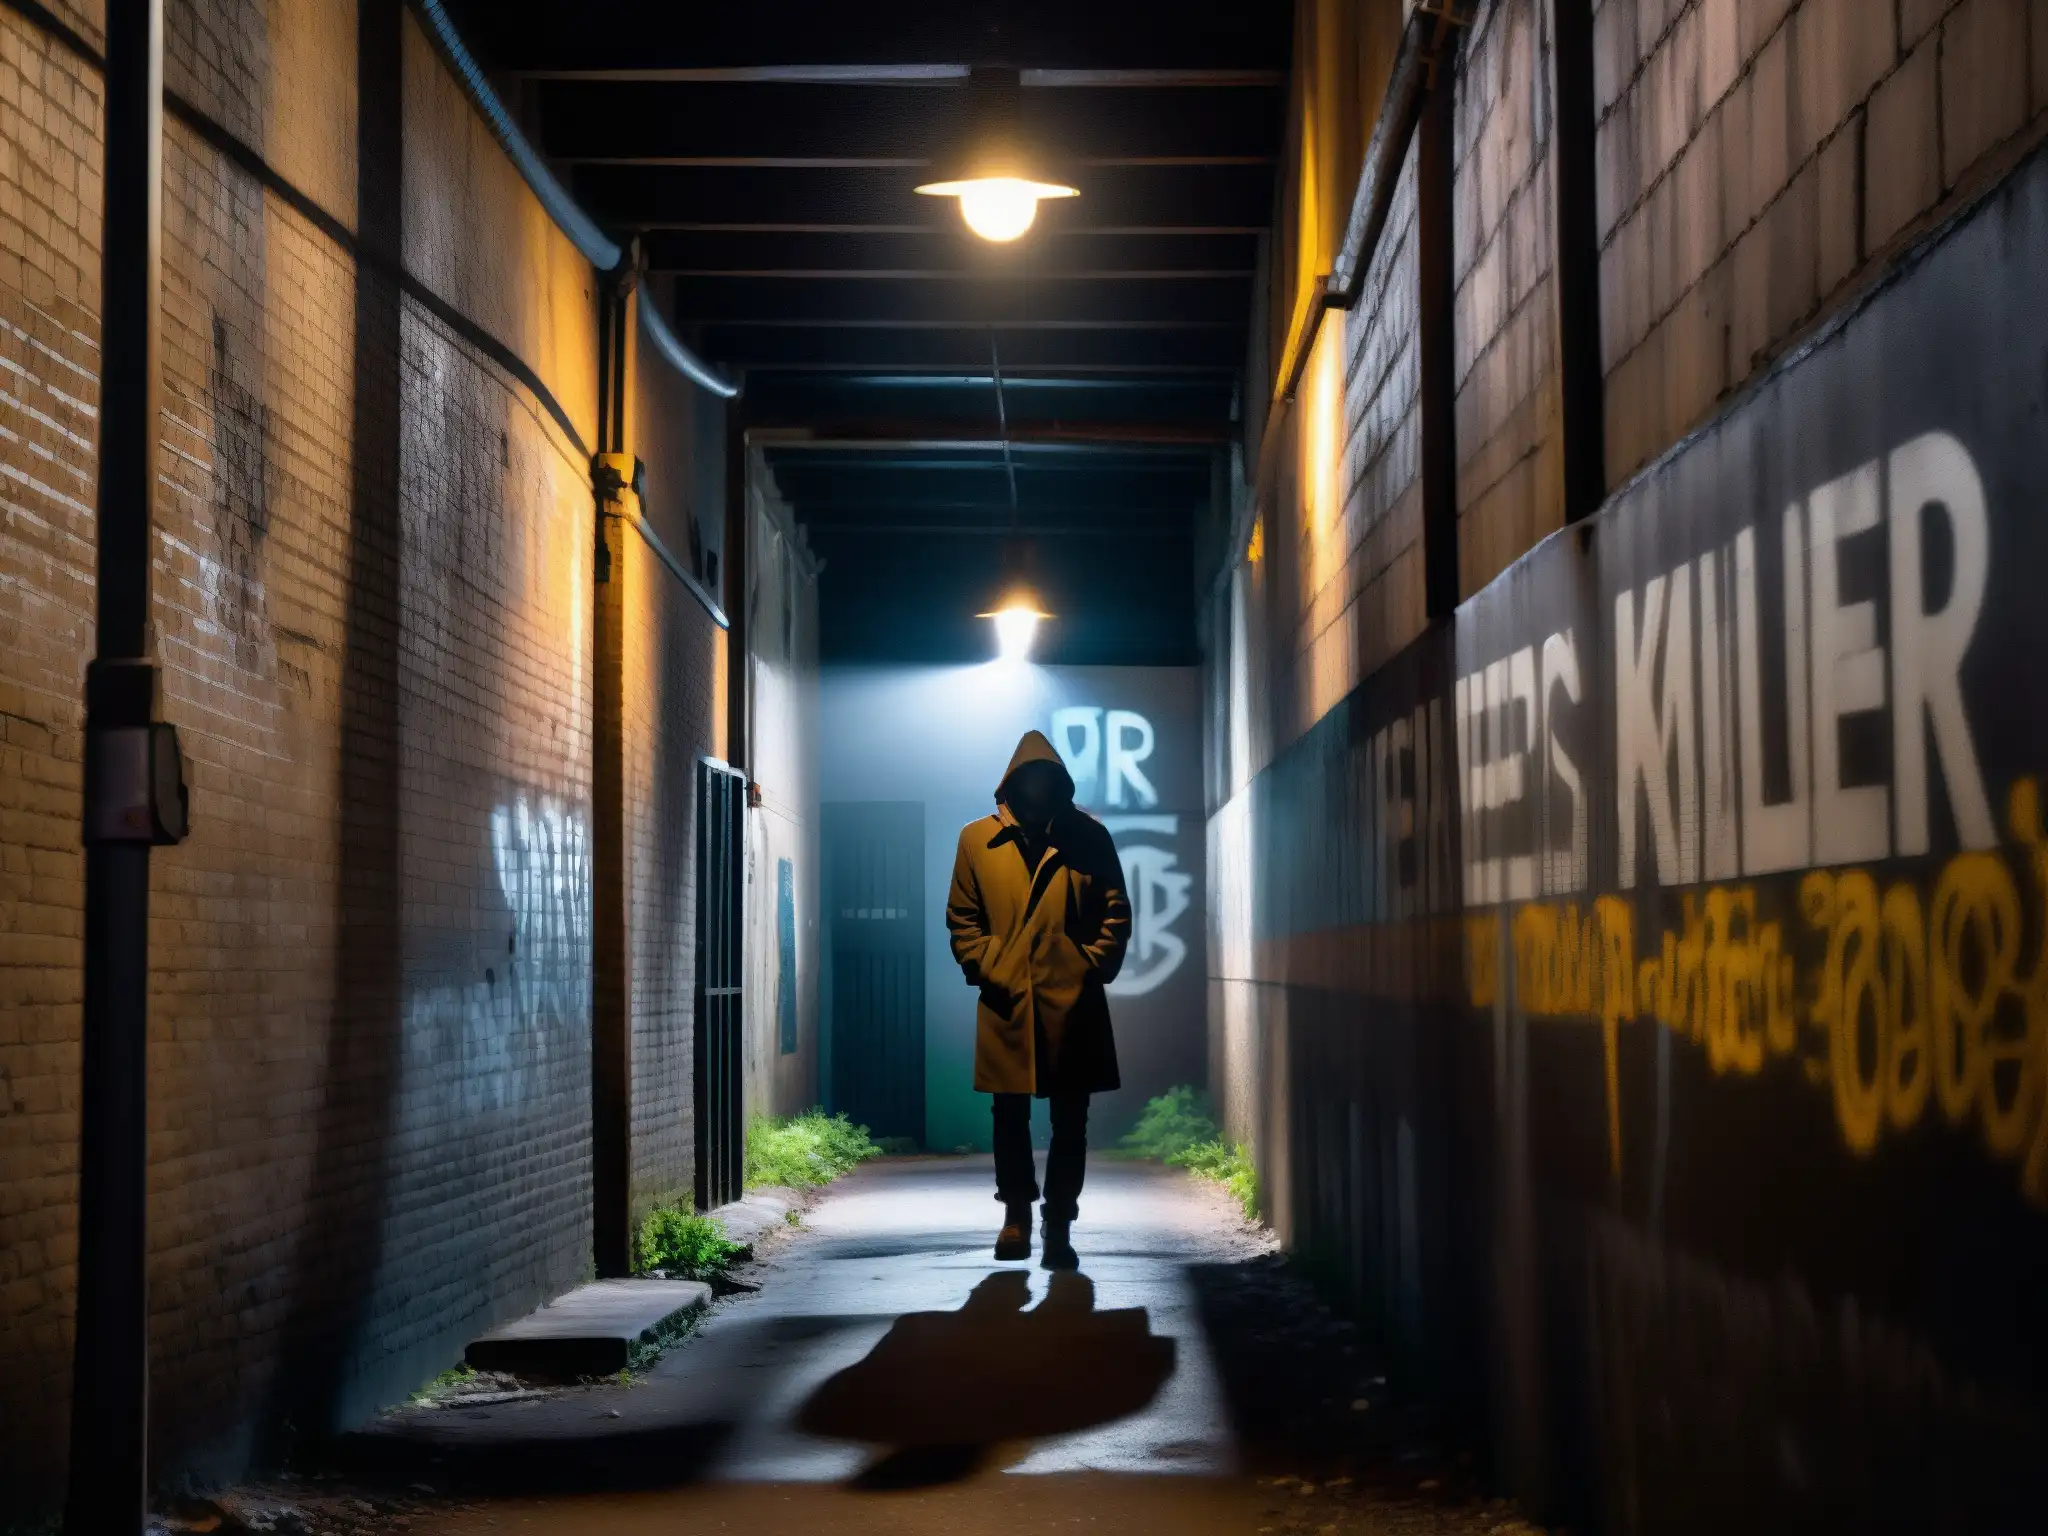 Un callejón urbano sombrío con grafitis y una solitaria farola, evocando peligro y misterio